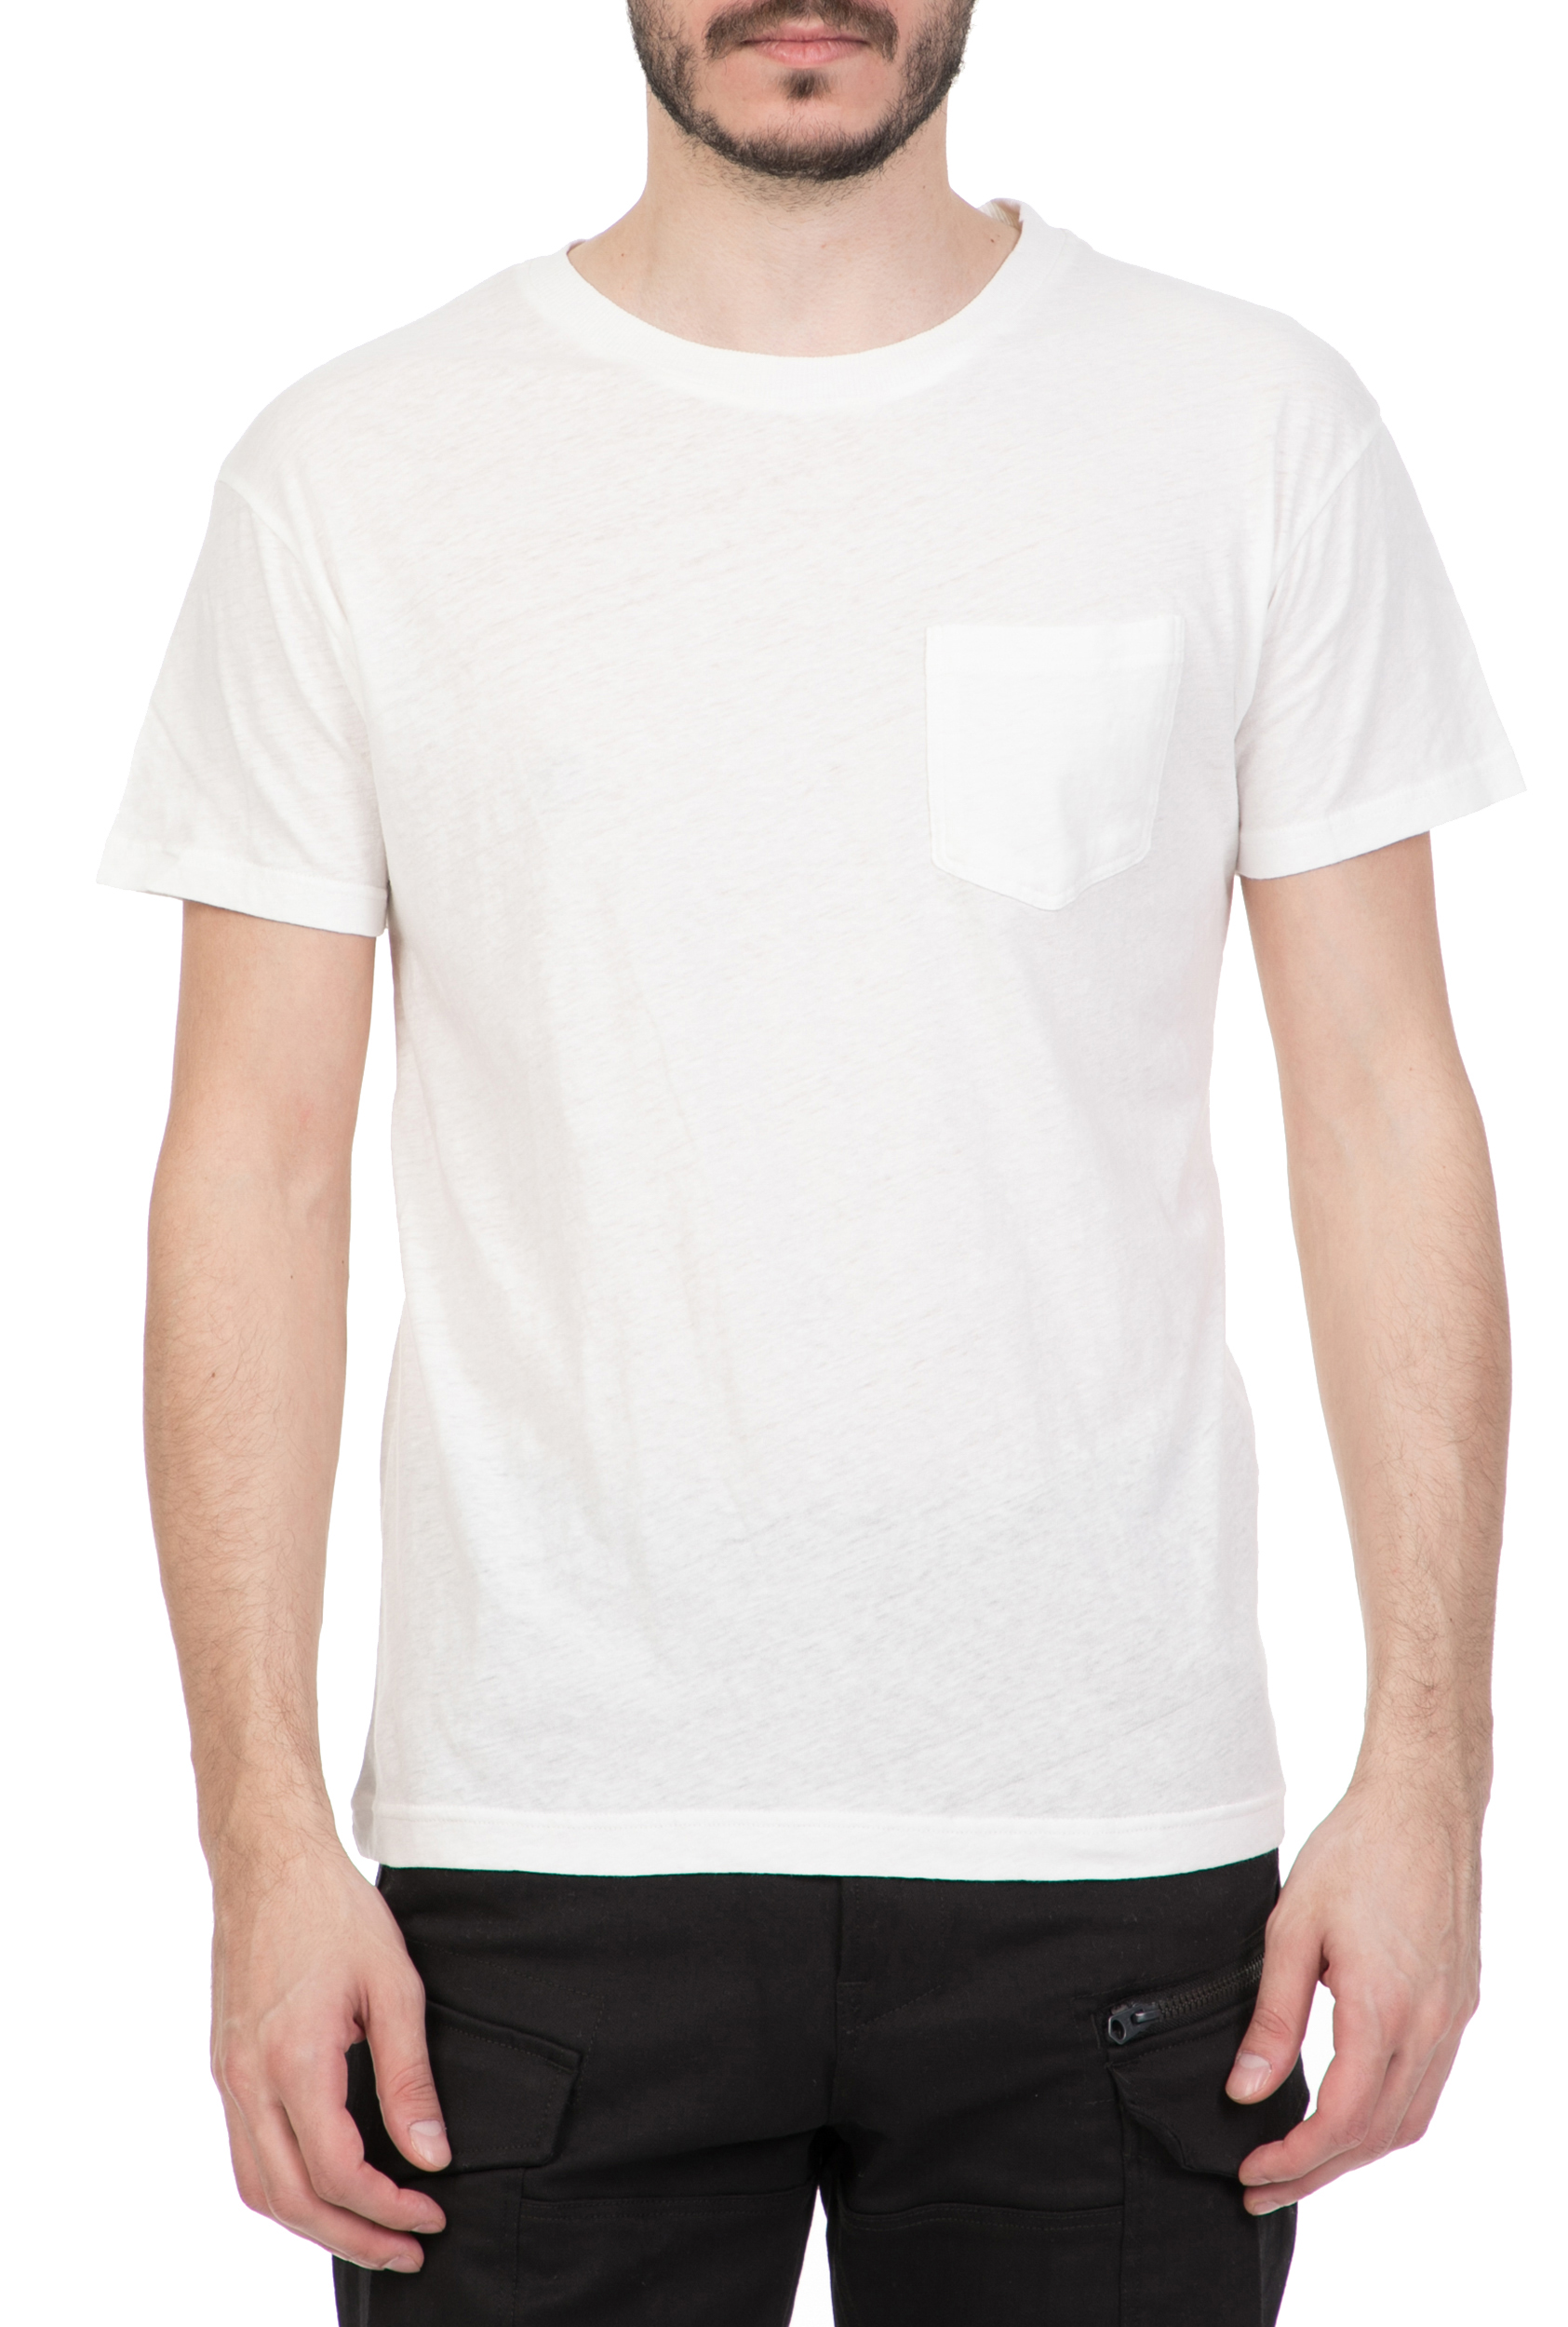 Ανδρικά/Ρούχα/Μπλούζες/Κοντομάνικες AMERICAN VINTAGE - Ανδρική κοντομάνικη μπλούζα AMERICAN VINTAGE λευκή